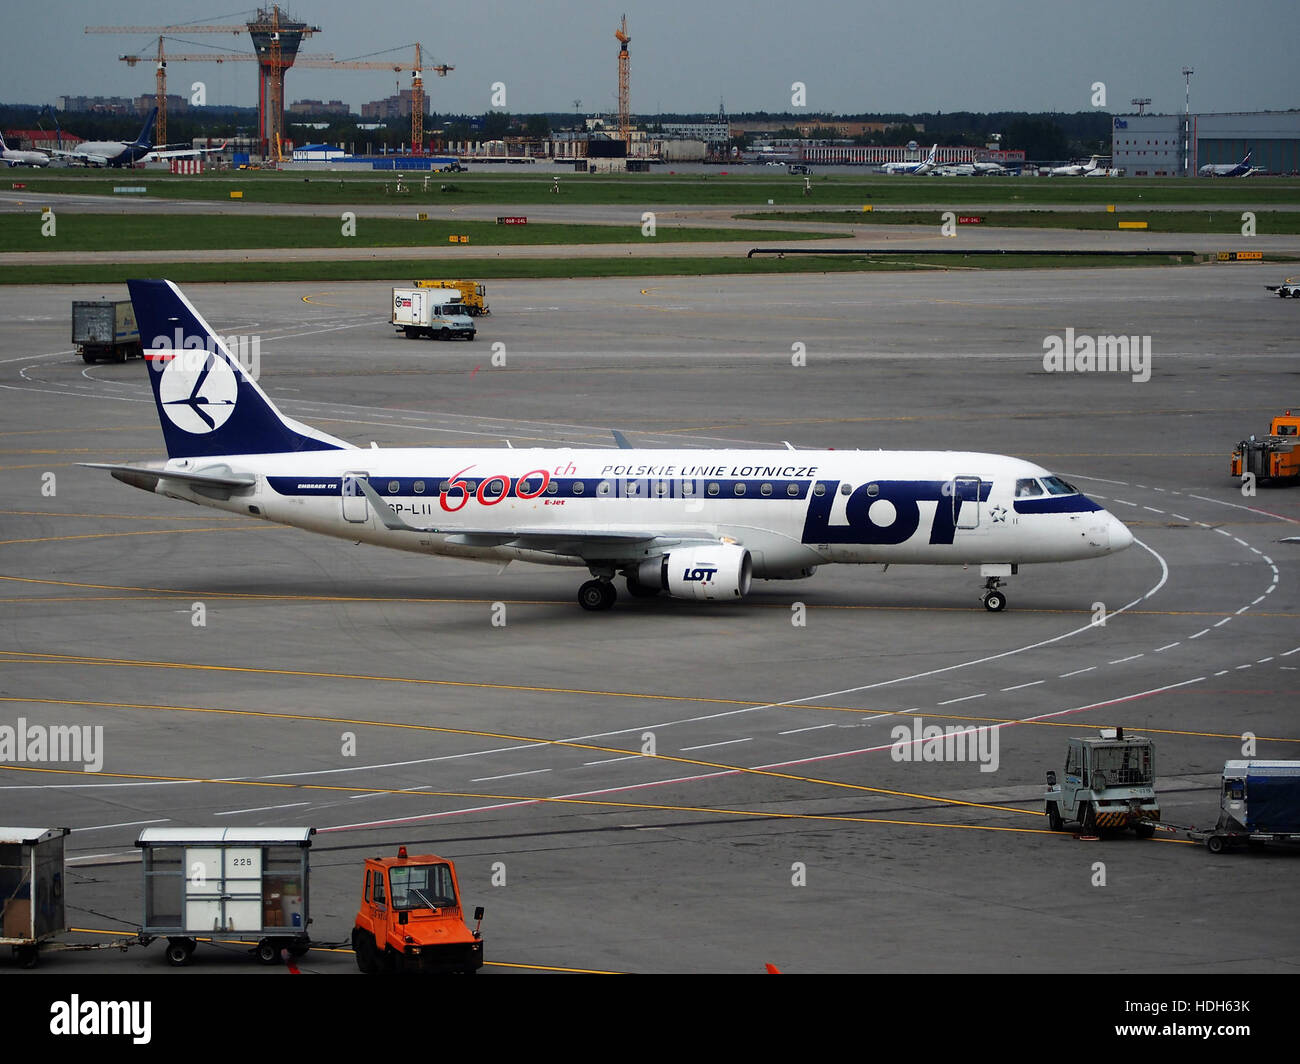 SP-LII (avión) en el Aeropuerto Internacional Sheremetyevo pic3 Foto de stock